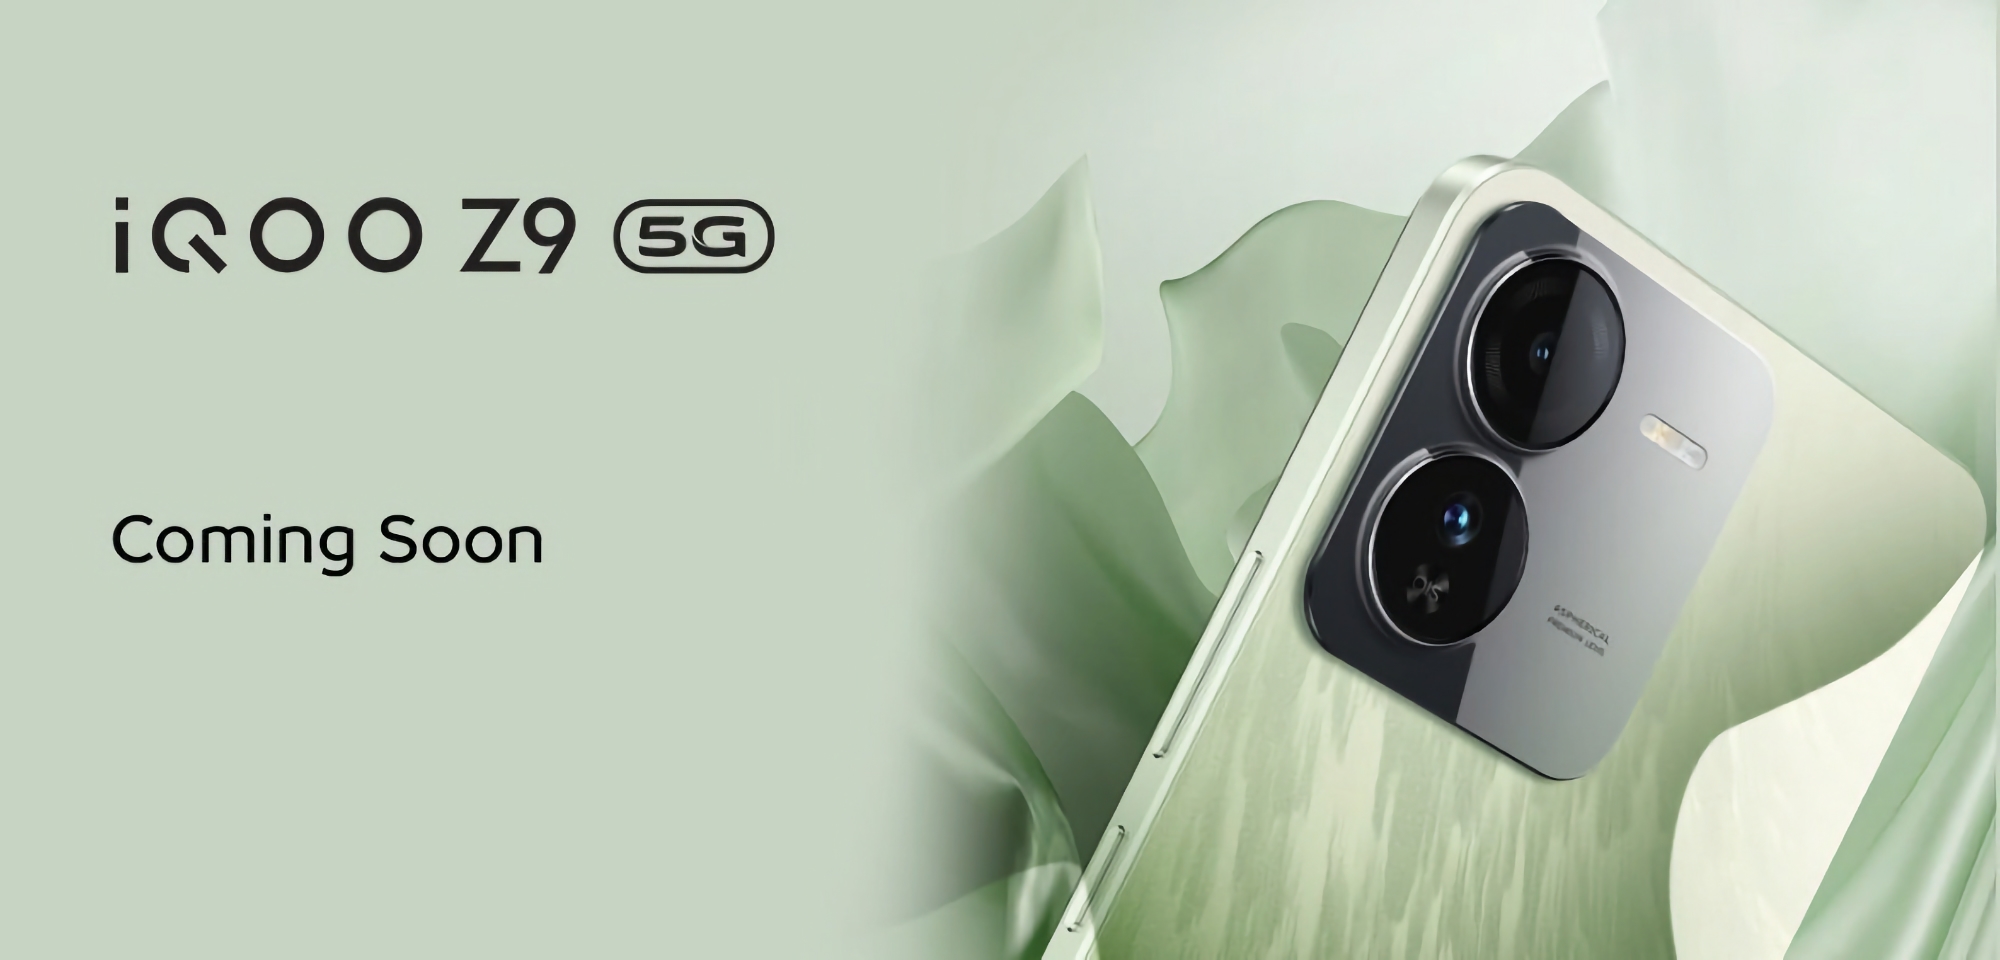 Puce MediaTek Dimensity 7200 et appareil photo Sony IMX882 : vivo a commencé à teaser le smartphone iQOO Z9 5G